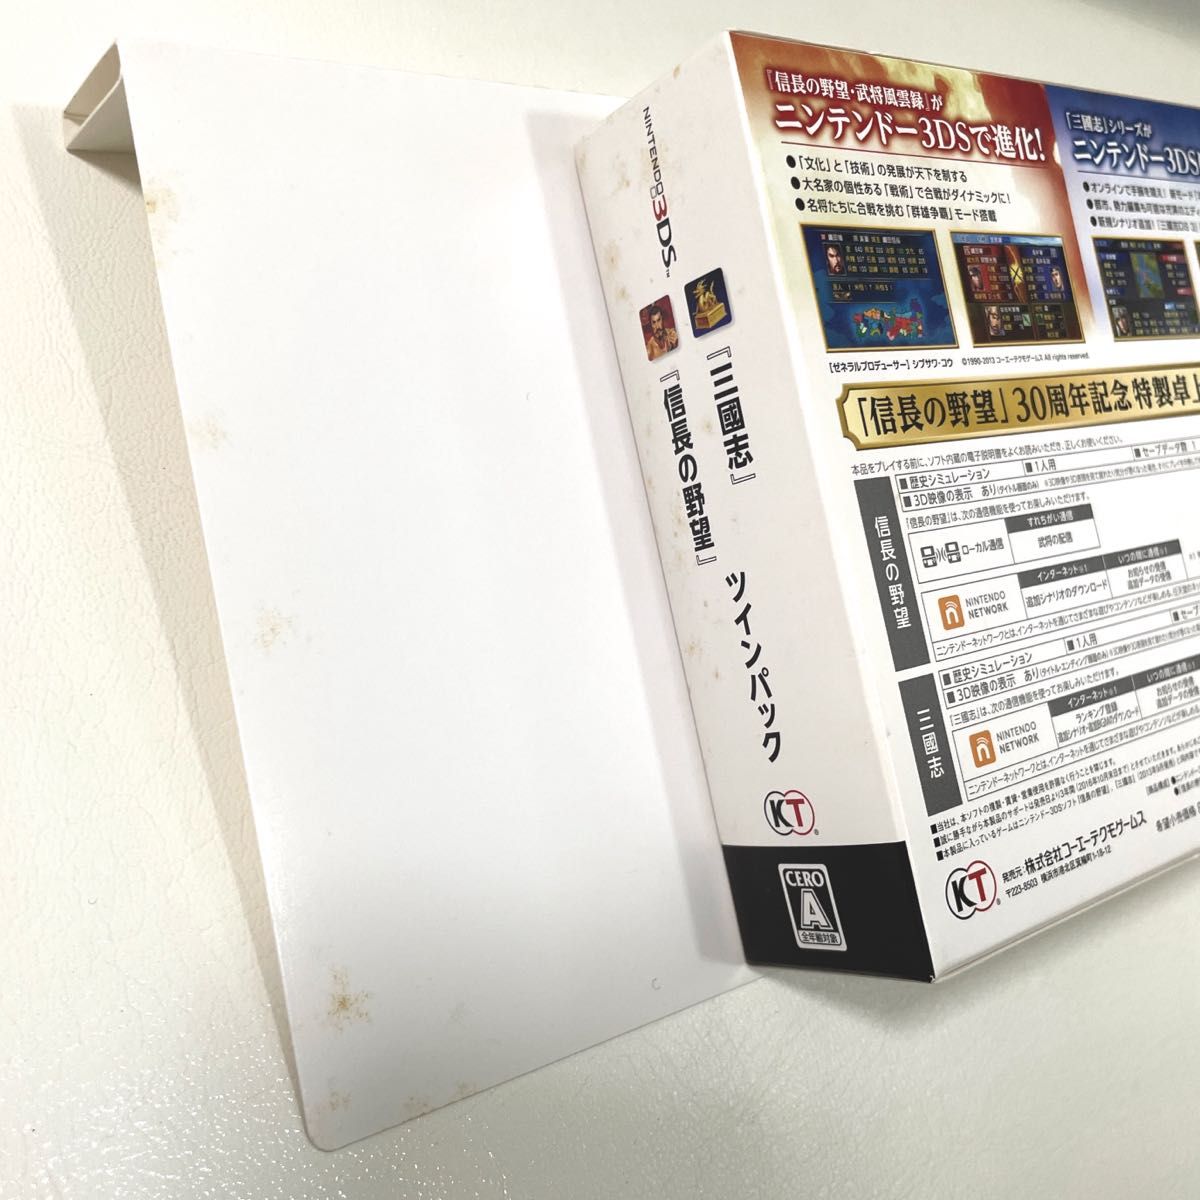 信長の野望 三國志 ツインパック 3DS ソフト カセット ニンテンドー